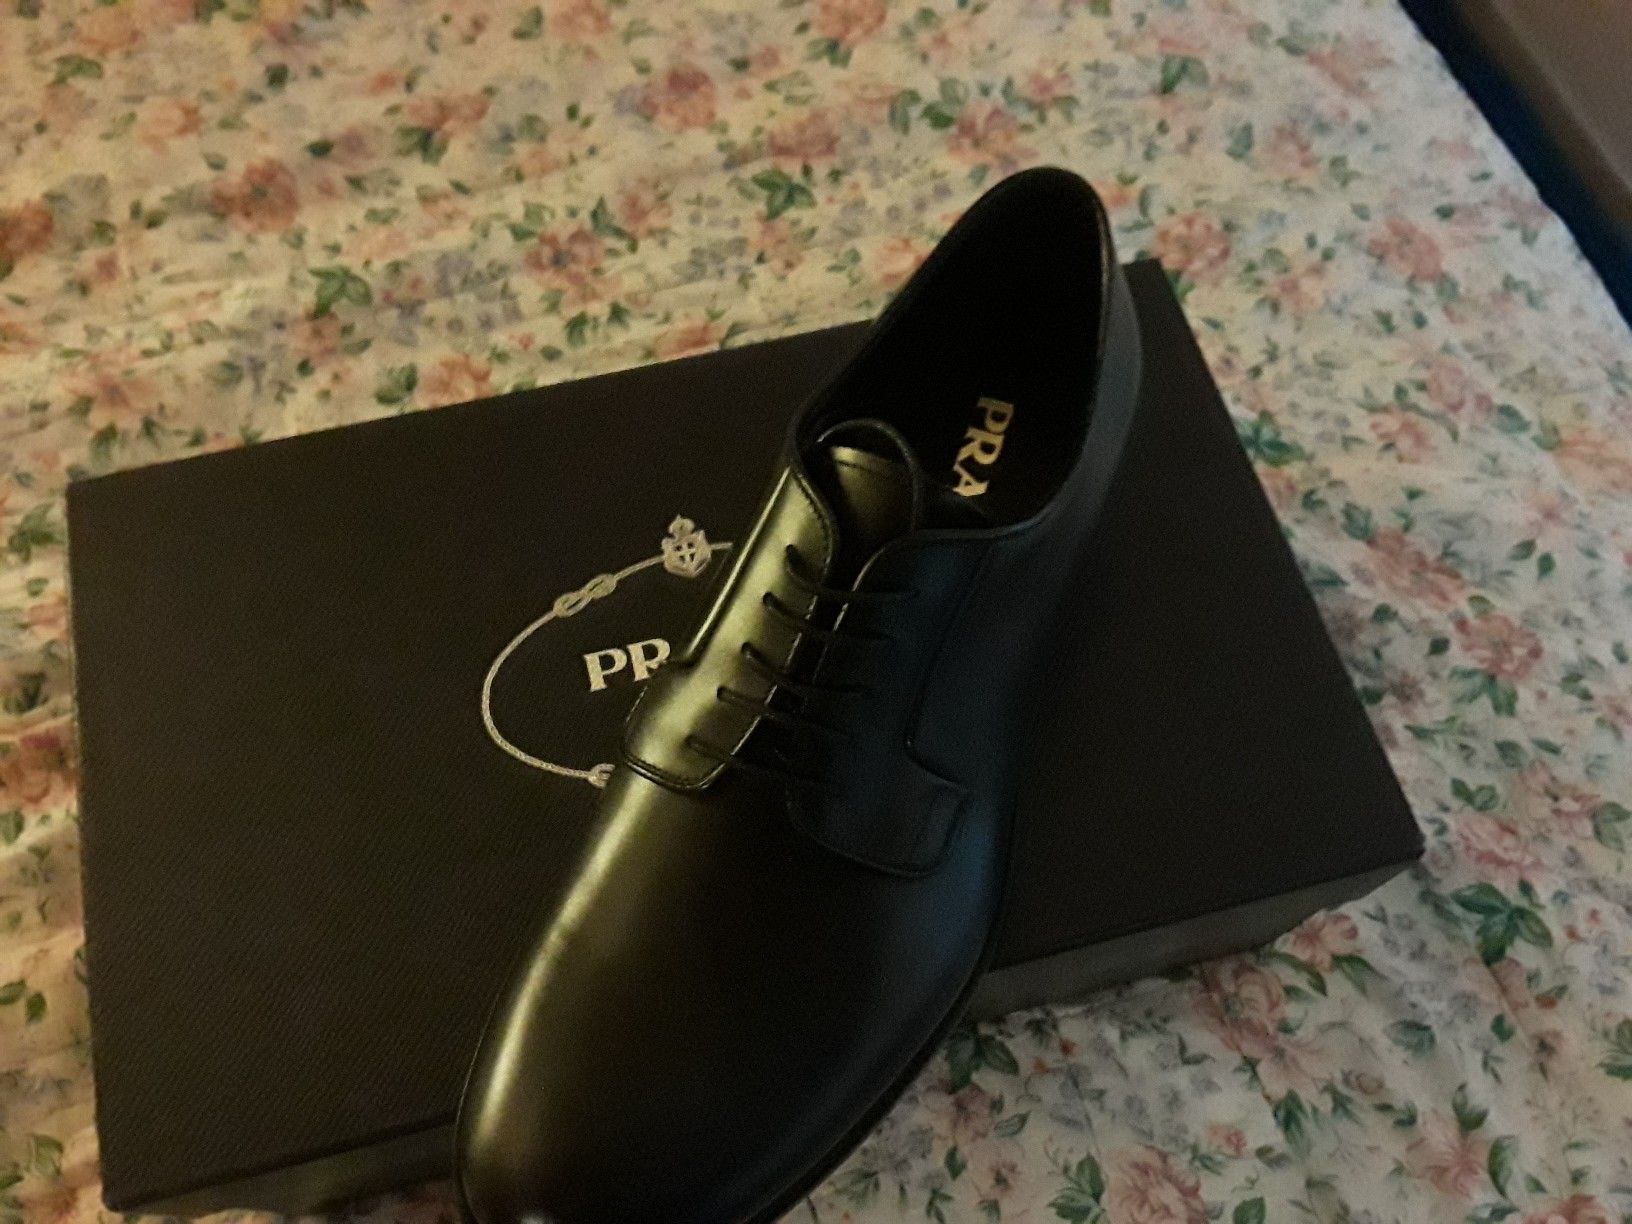 Prada shoes